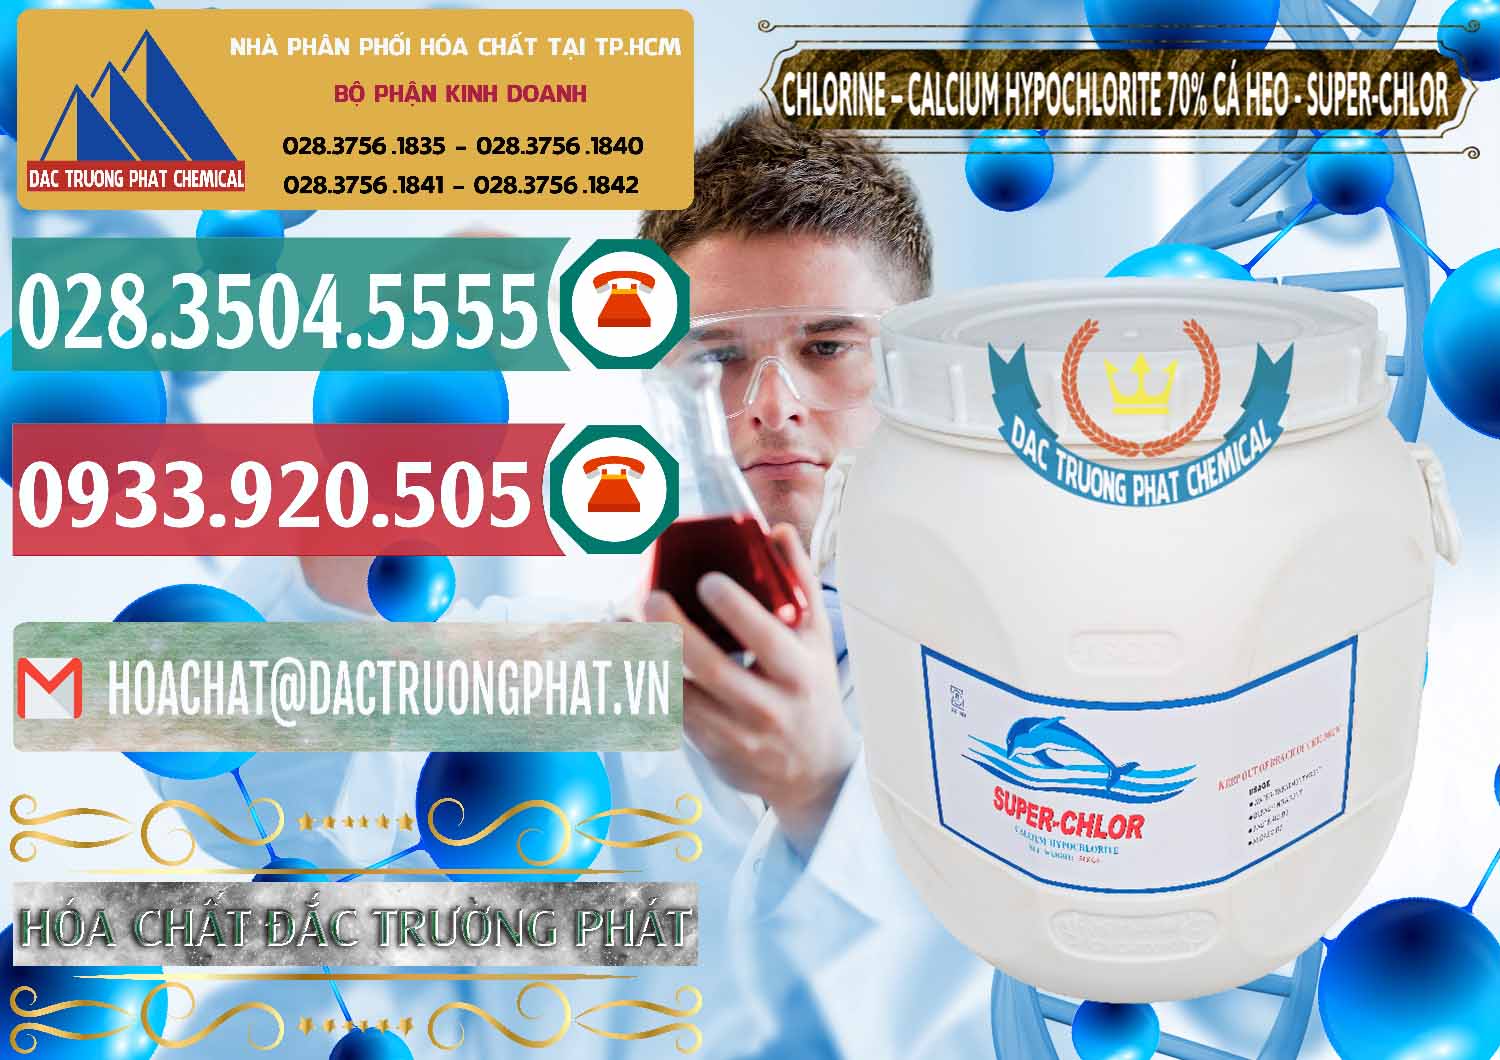 Nơi chuyên cung cấp ( bán ) Clorin - Chlorine Cá Heo 70% Super Chlor Trung Quốc China - 0058 - Đơn vị chuyên bán - cung cấp hóa chất tại TP.HCM - muabanhoachat.vn